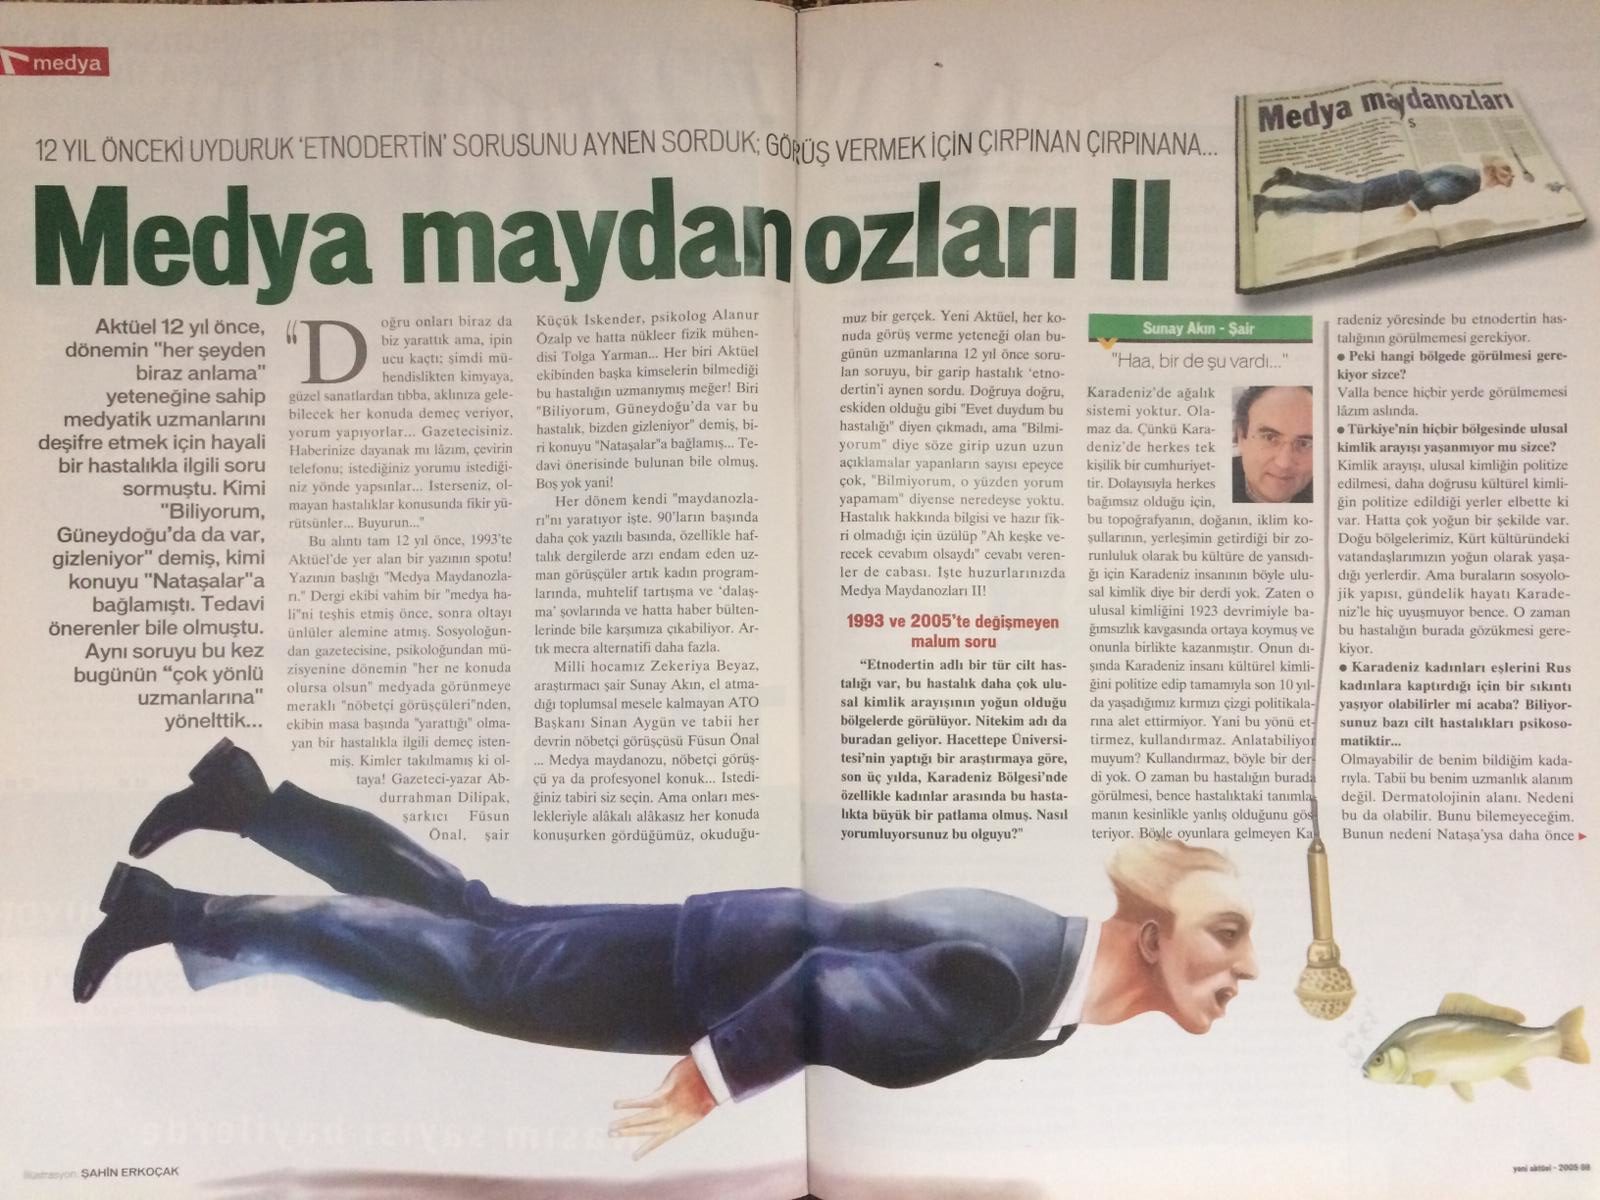 Yeni Aktüel Dergisinin 22-28 Kasım 2005 tarihleri arası için yayınlanan 19. sayısındaki "Medya Maydanozları II" başlıklı yazı